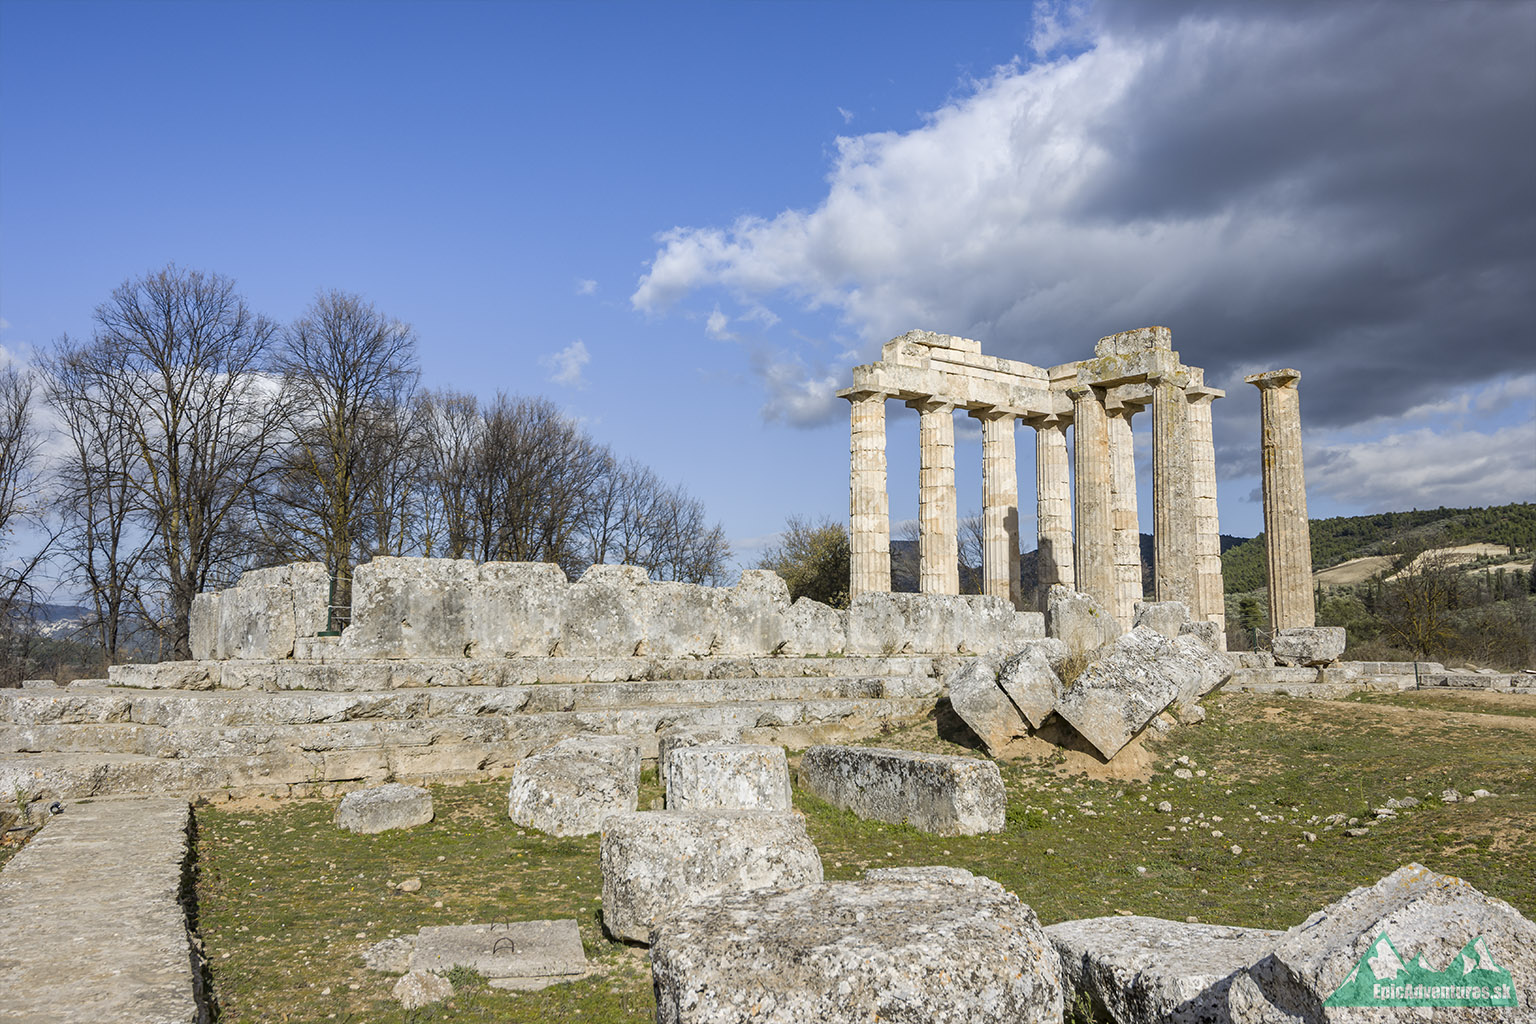 Grécky Peloponéz sme si vybrali najmä pre veľké množstvo antických pamiatok